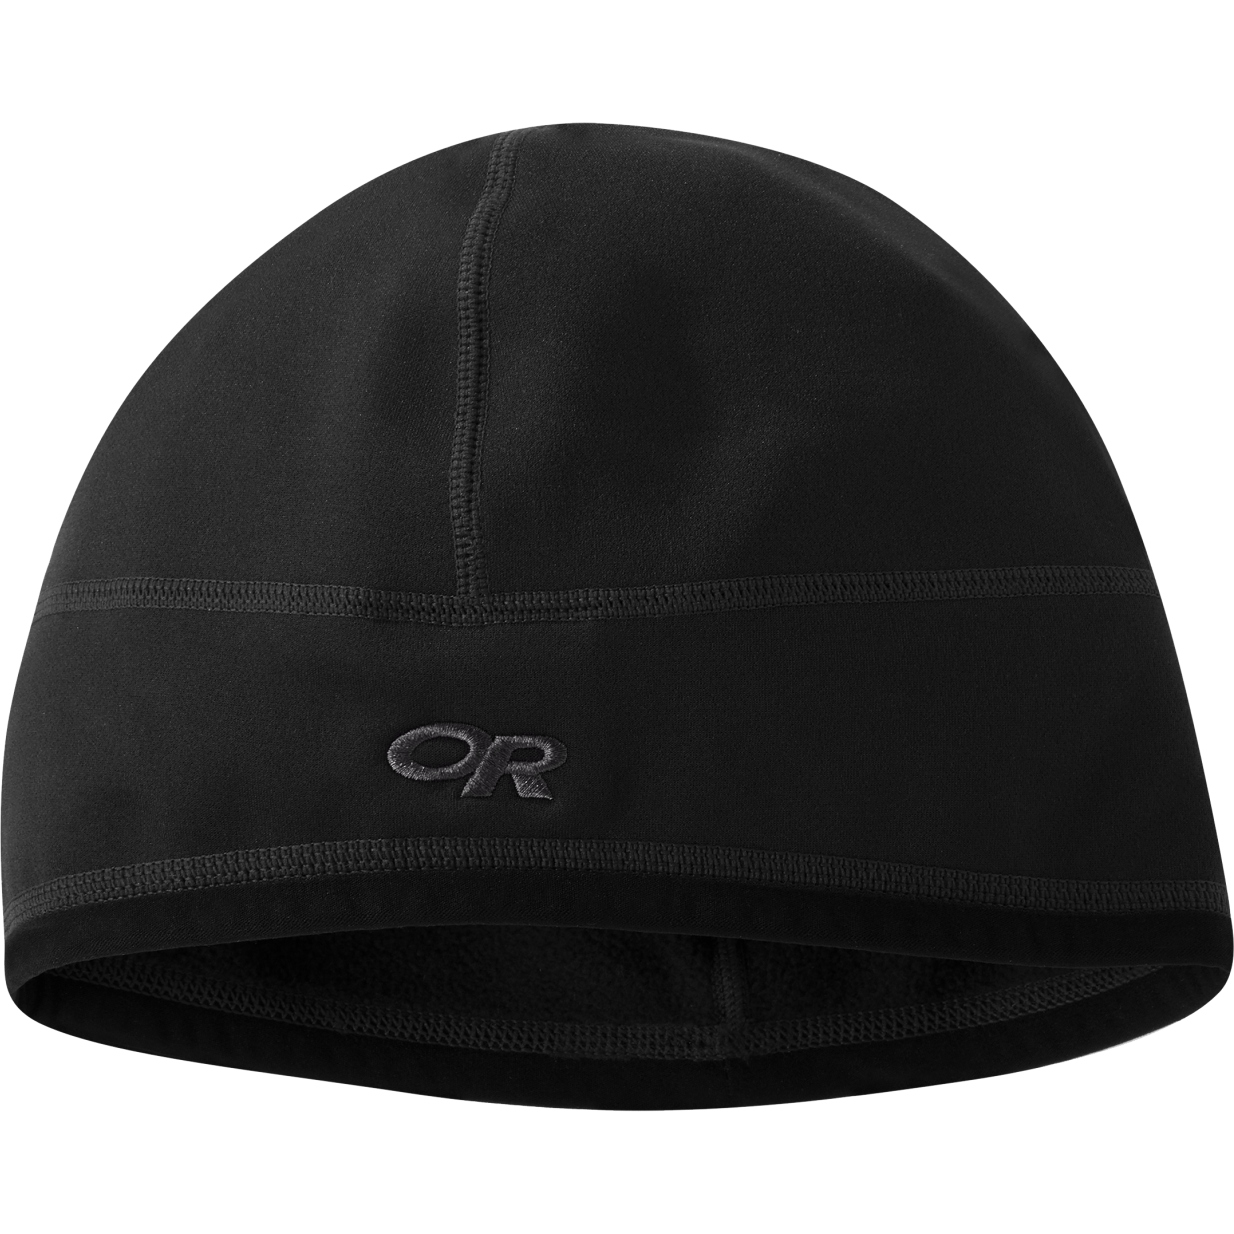 Produktbild von Outdoor Research Vigor Mütze - schwarz